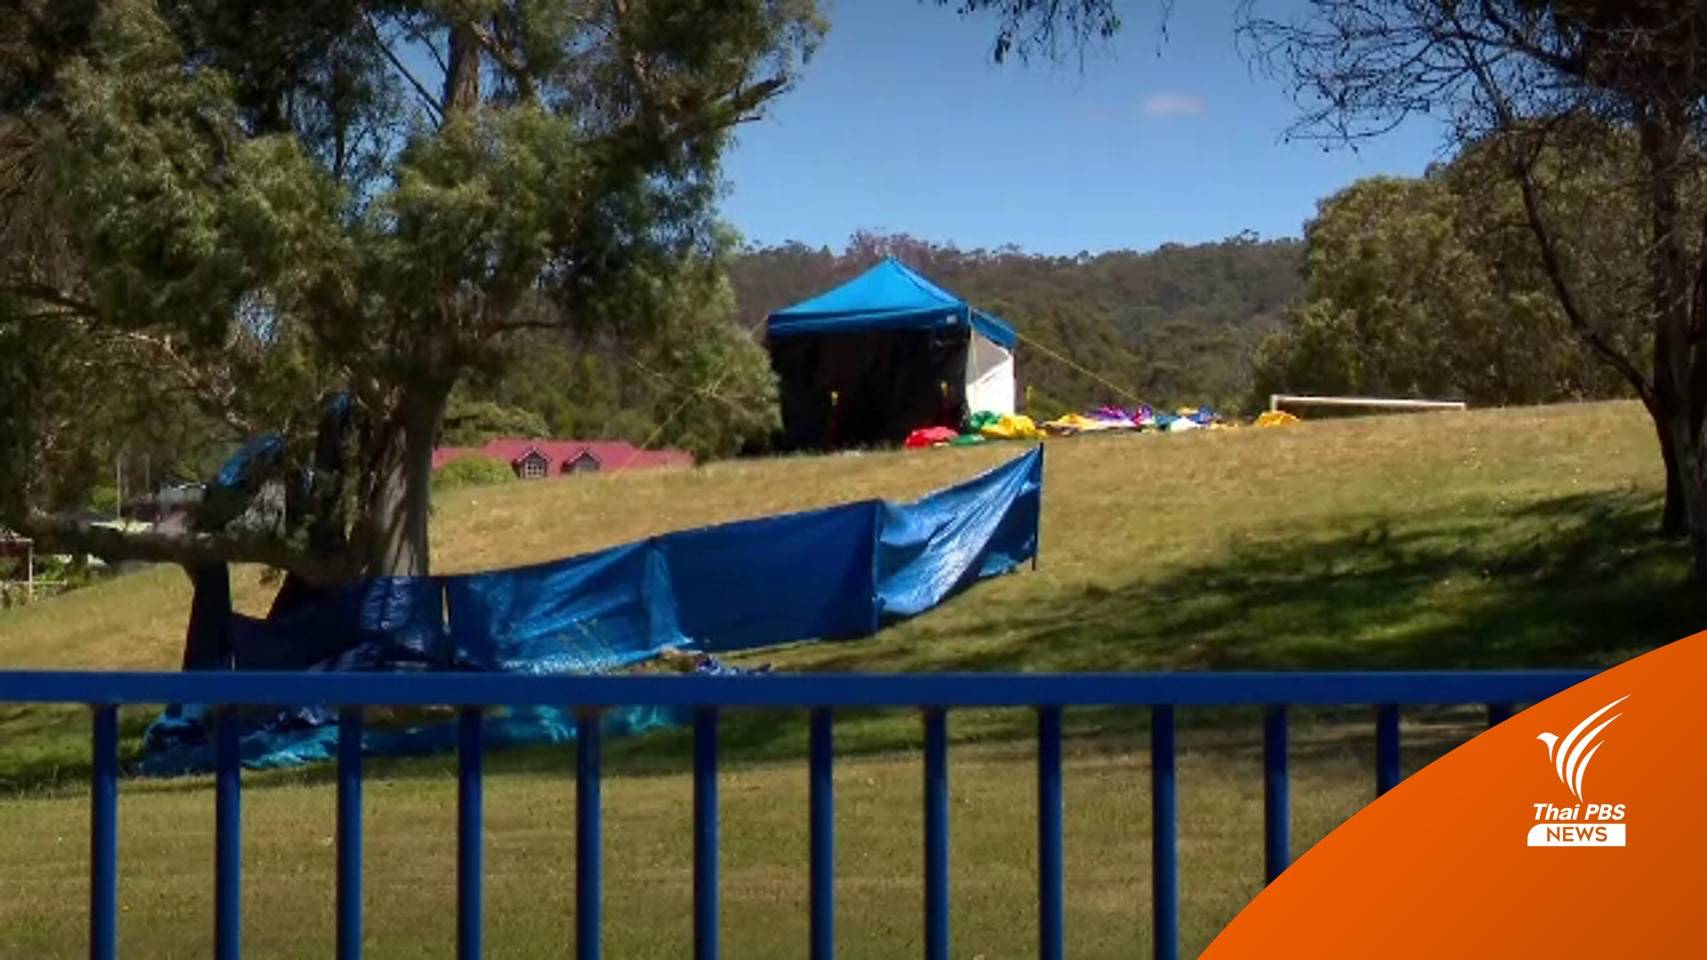 ลมหอบปราสาทเป่าลมในออสเตรเลียลอยสูง 10 ม.เด็กเสียชีวิต 5 คน